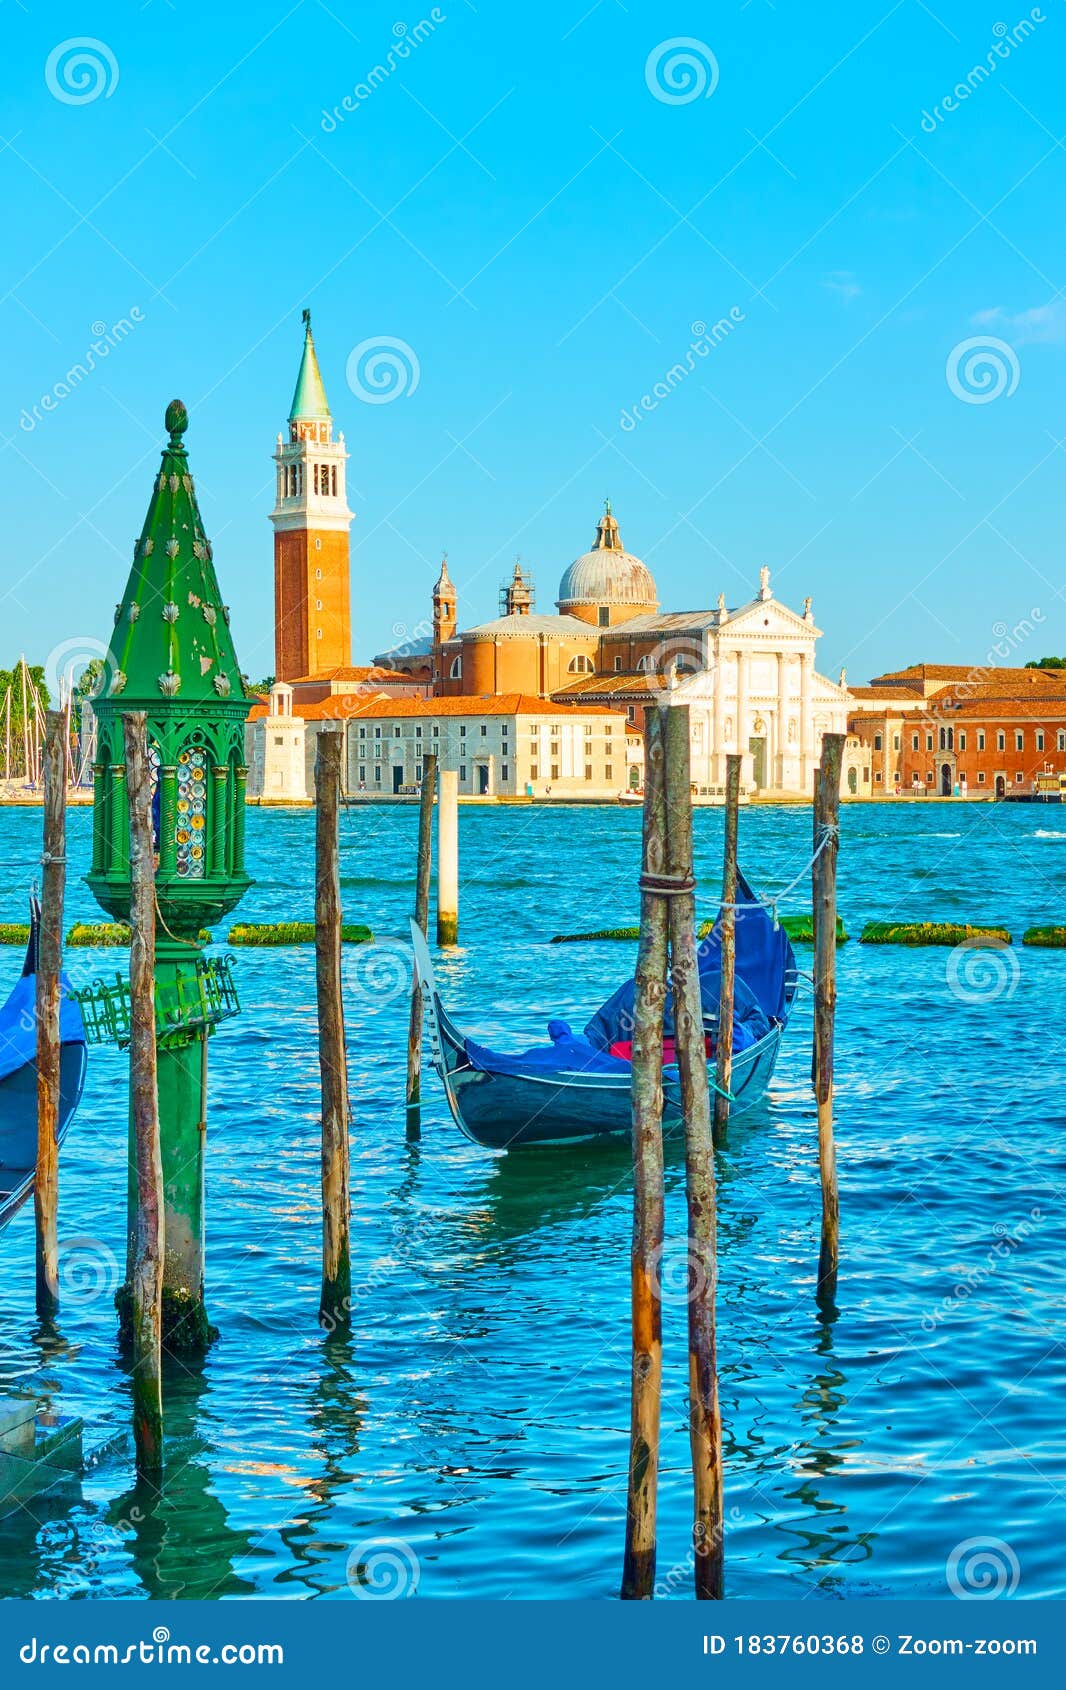 San Giorgio Maggiore Island in Venice Stock Photo - Image of veneto ...